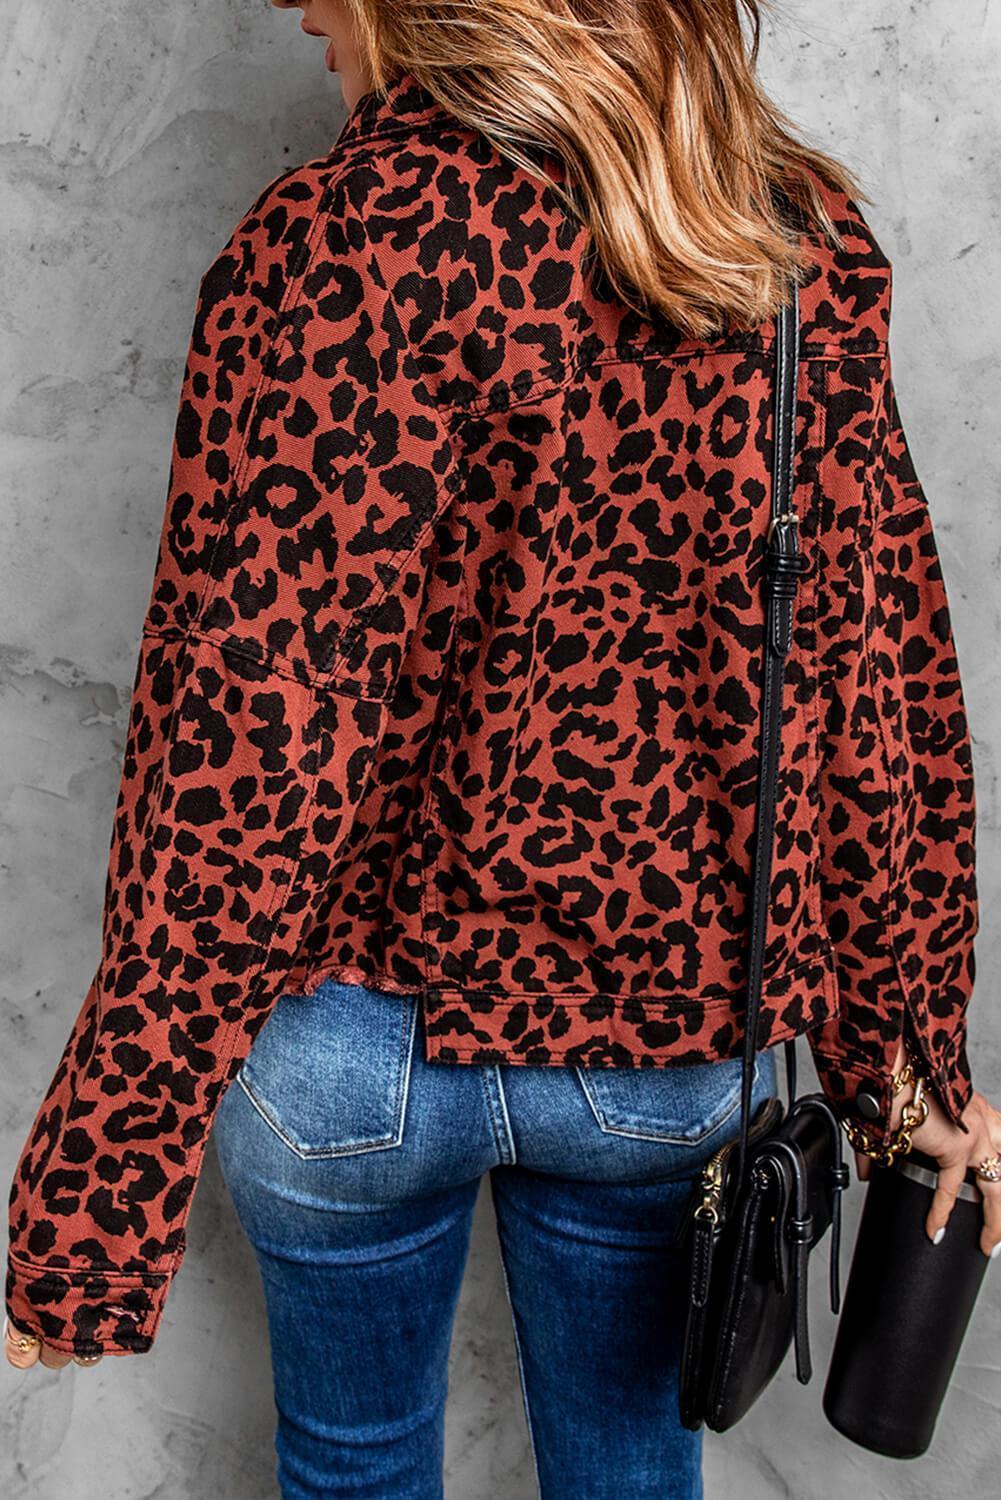 Wild Leopard Print Jacket - MXSTUDIO.COM